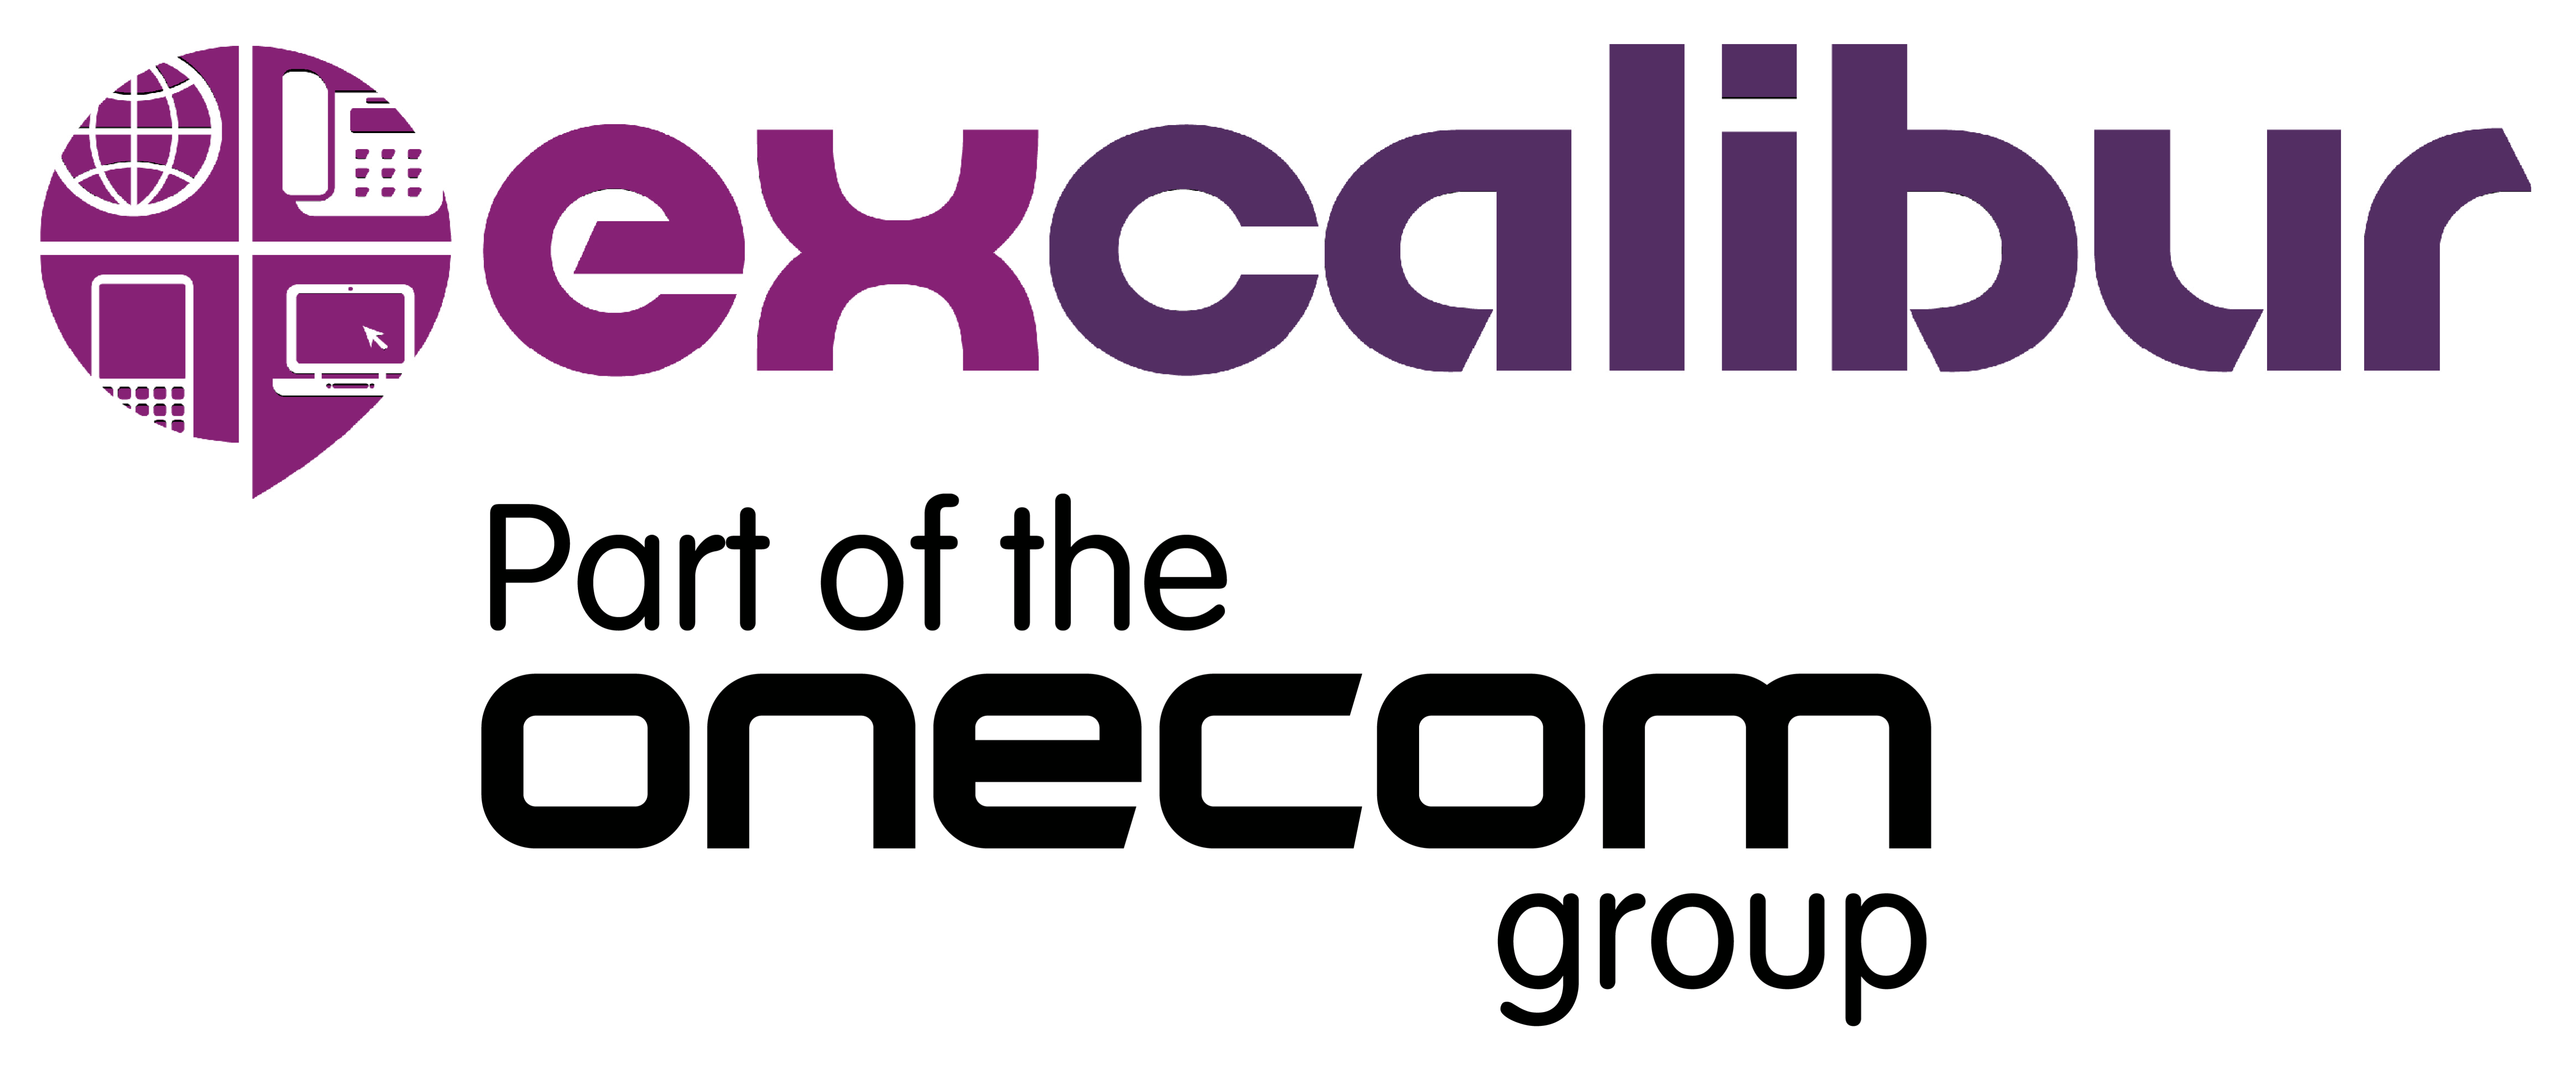 Excalibur Communications and Onecom logo.